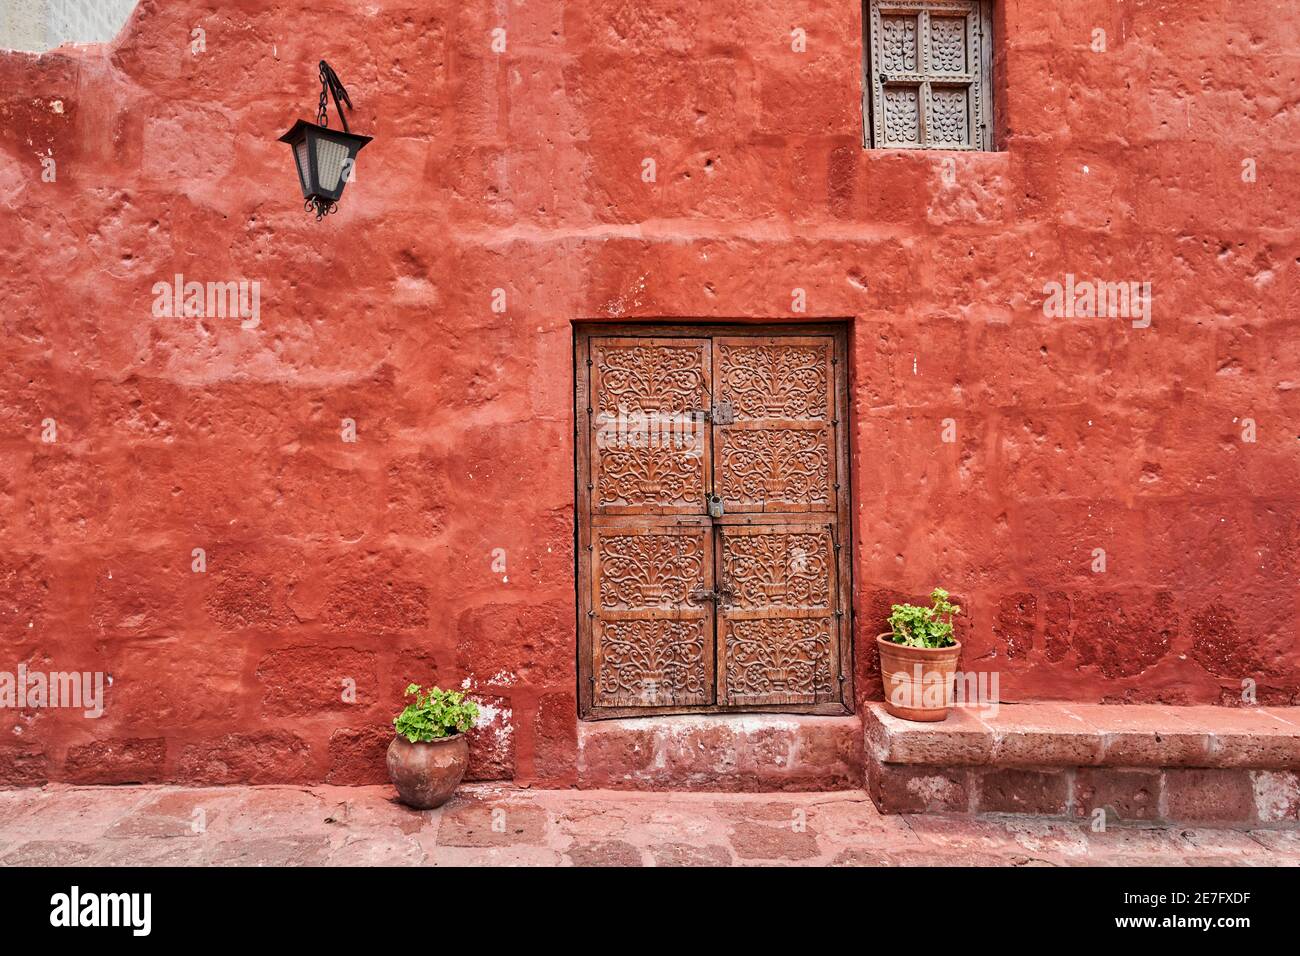 bâtiment colonial espagnol de couleur rouge sur la façade, une lanterne et une ancienne porte en bois avec ornements Banque D'Images